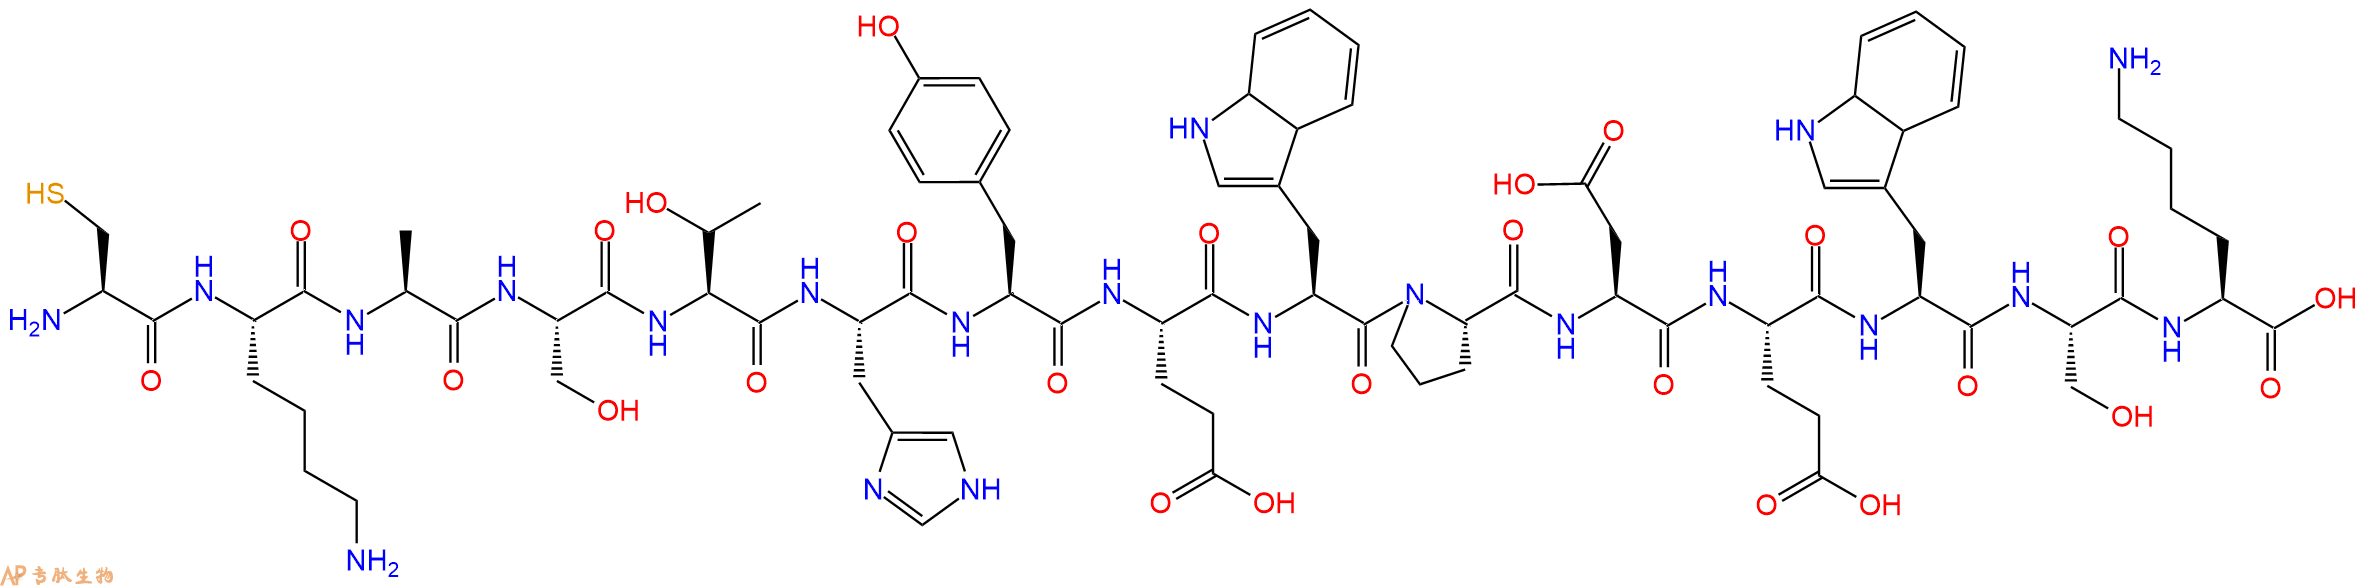 多肽CKASTHYEWPDEWSK的参数和合成路线|三字母为Cys-Lys-Ala-Ser-Thr-